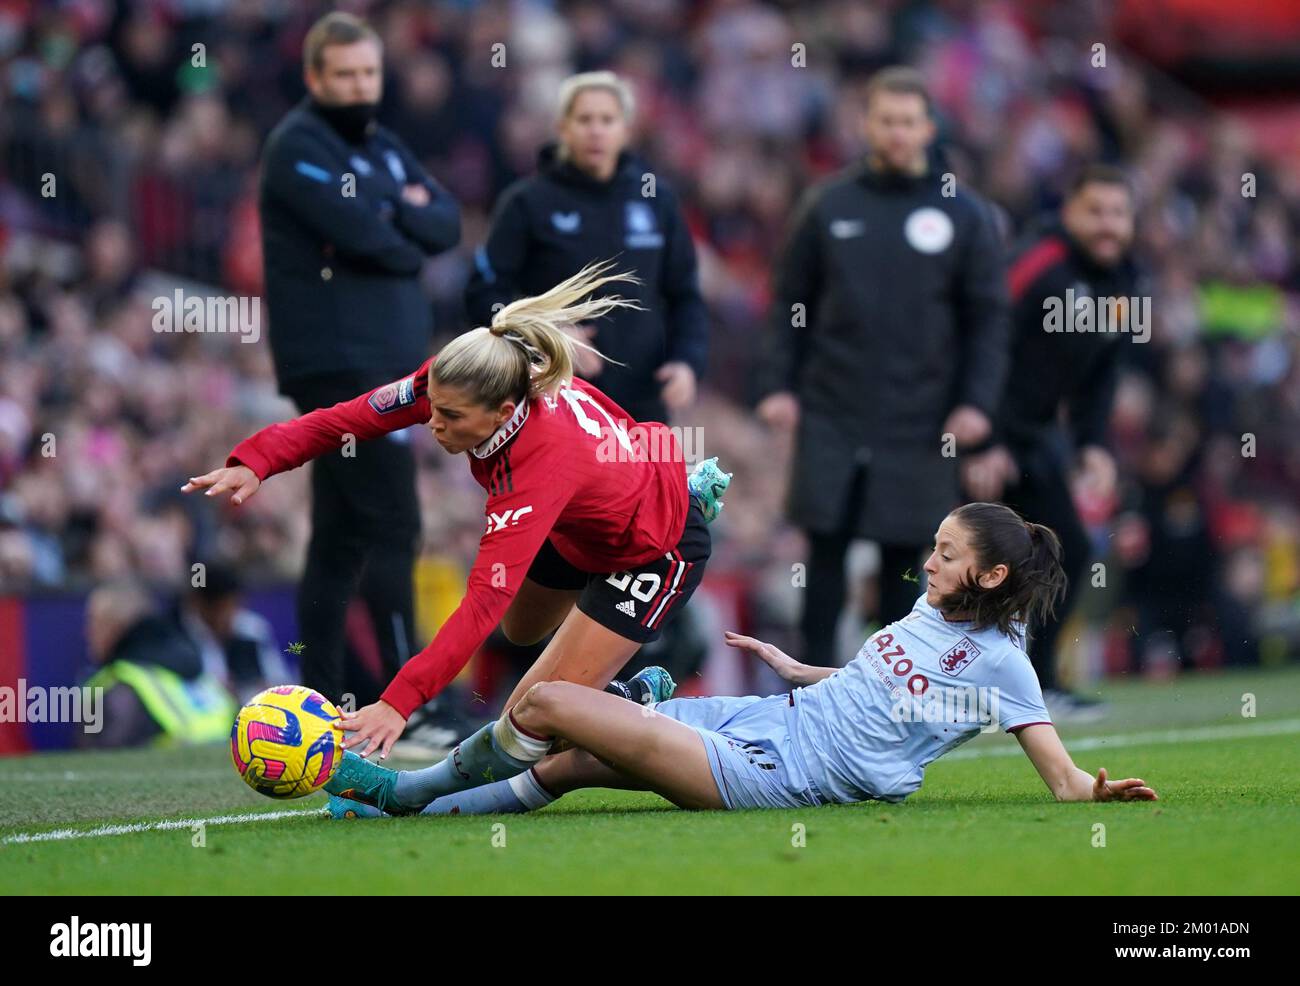 Alessia Russo (izquierda) del Manchester United es atacada por Danielle Turner de Aston Villa durante el partido de Superliga Femenina Barclays en Old Trafford, Manchester. Fecha de la foto: Sábado 3 de diciembre de 2022. Foto de stock